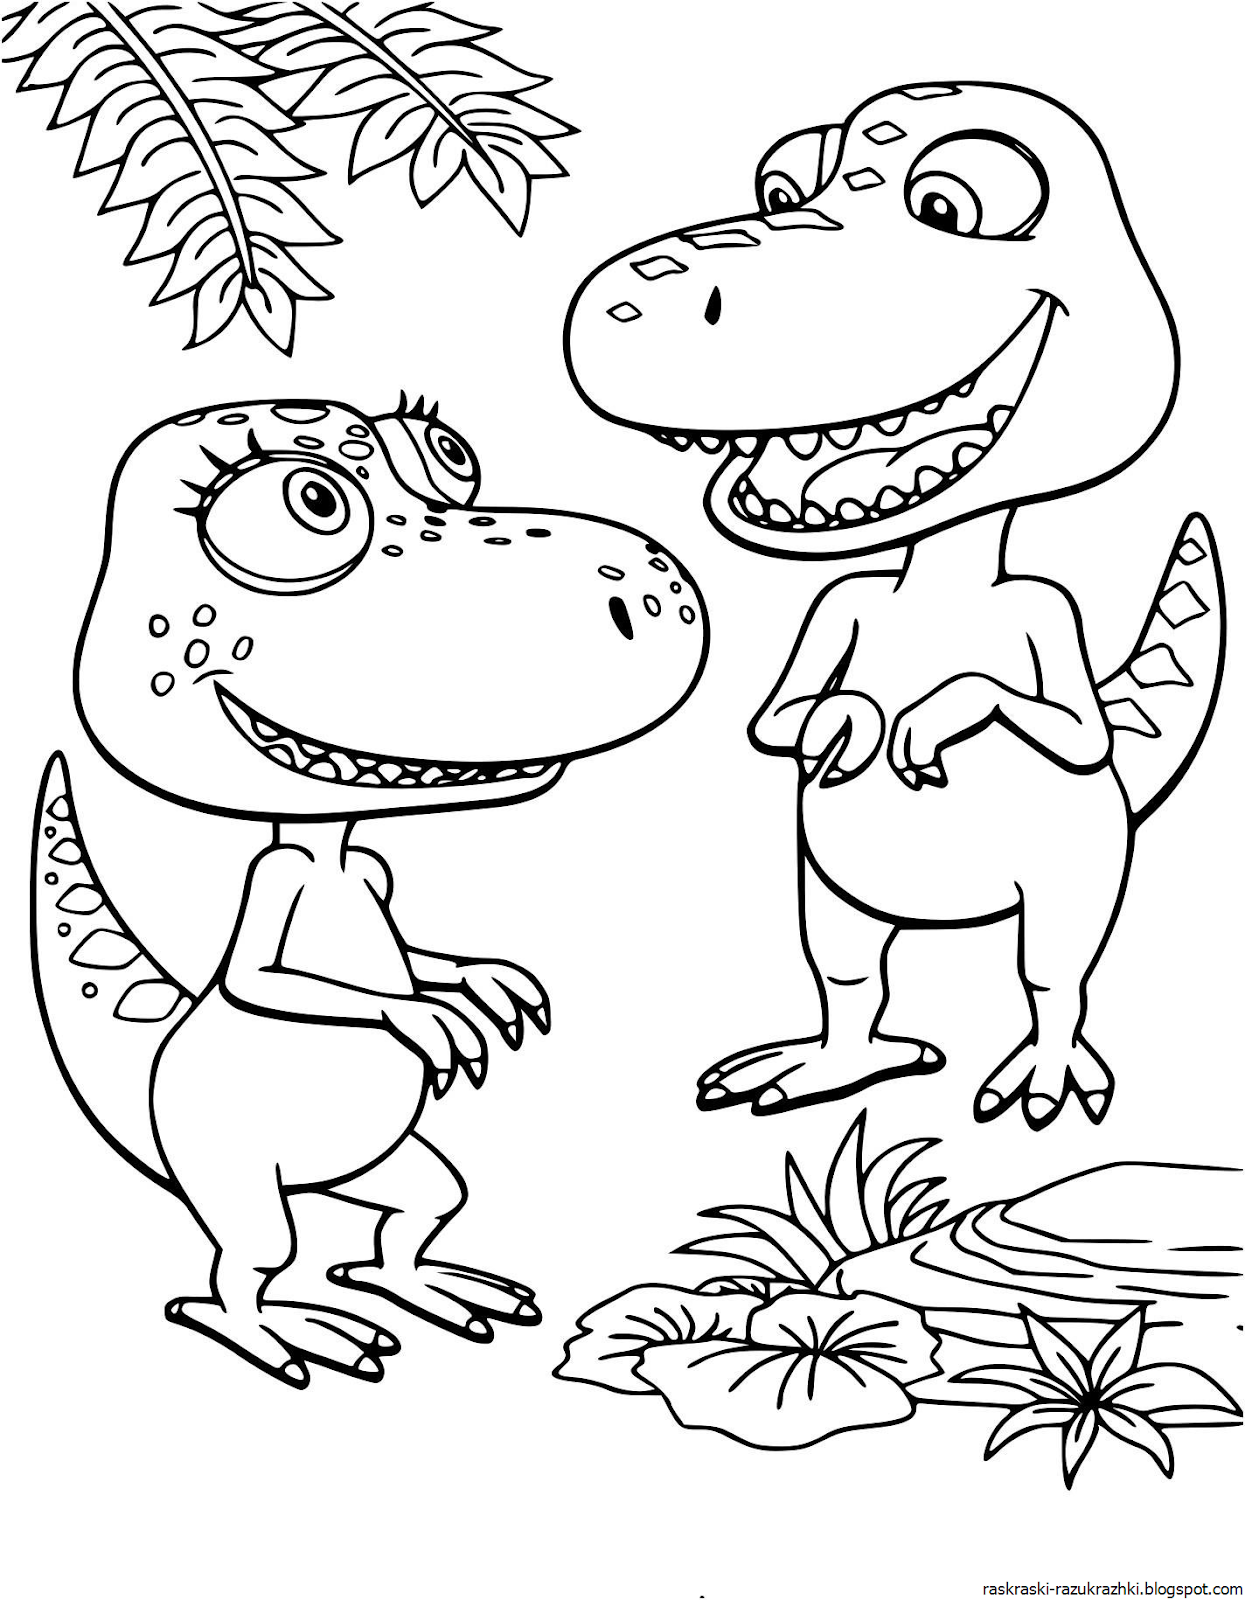 Динозавры раскраска а4. Бадди поезд динозавров раскраска. Динозавры / раскраска. Раскраски для мальчиков динозавры.